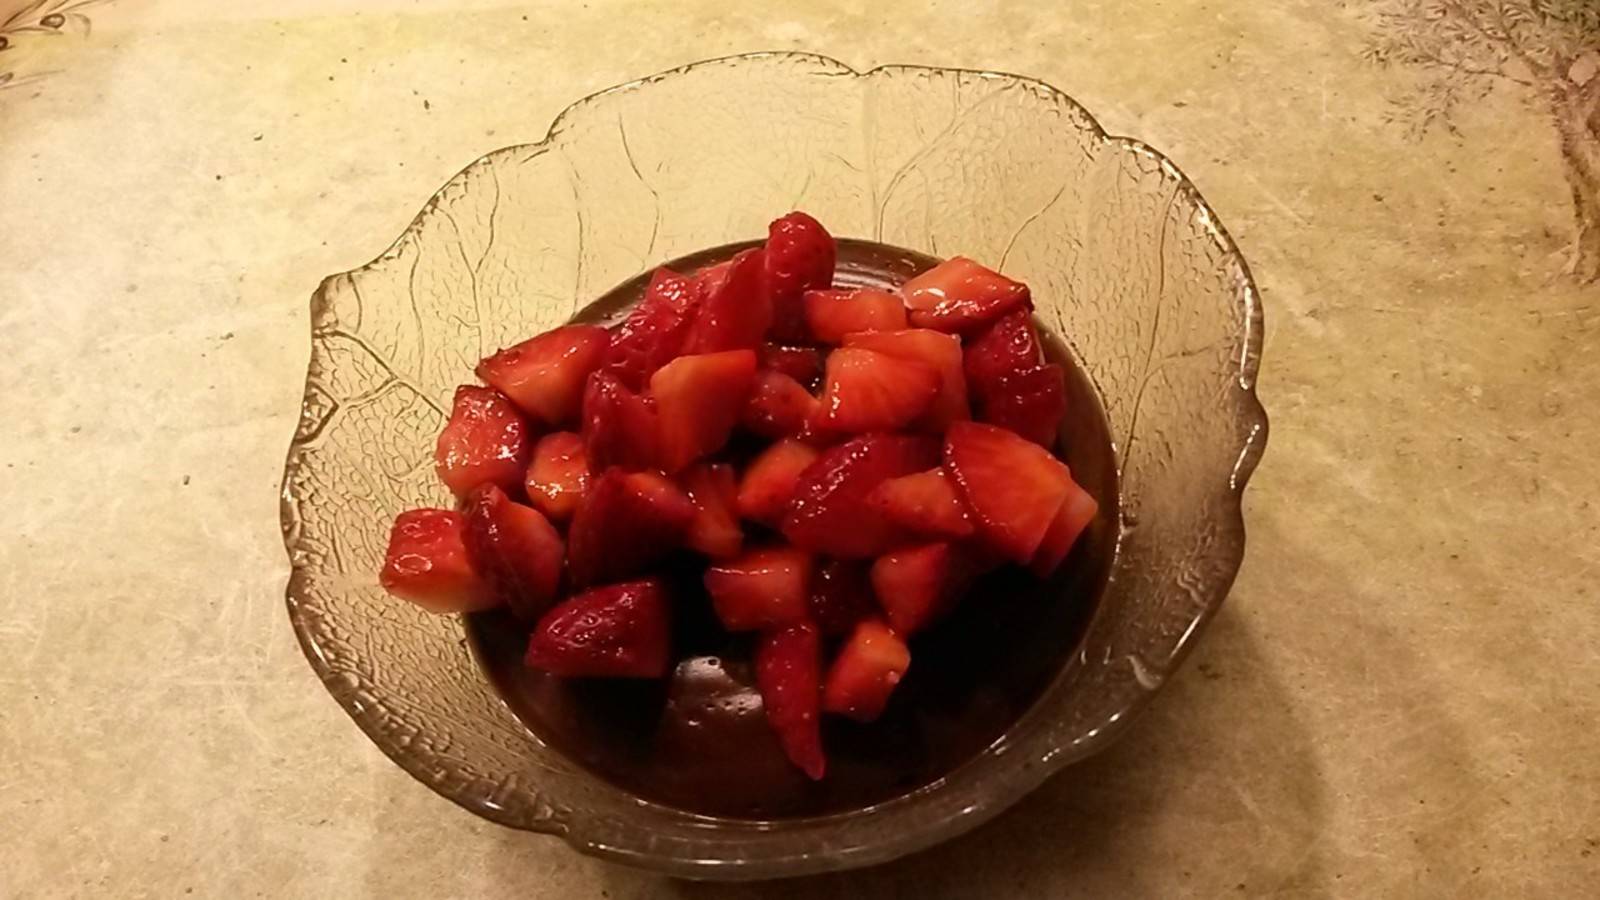 Schokopudding mit marinierten Erdbeeren